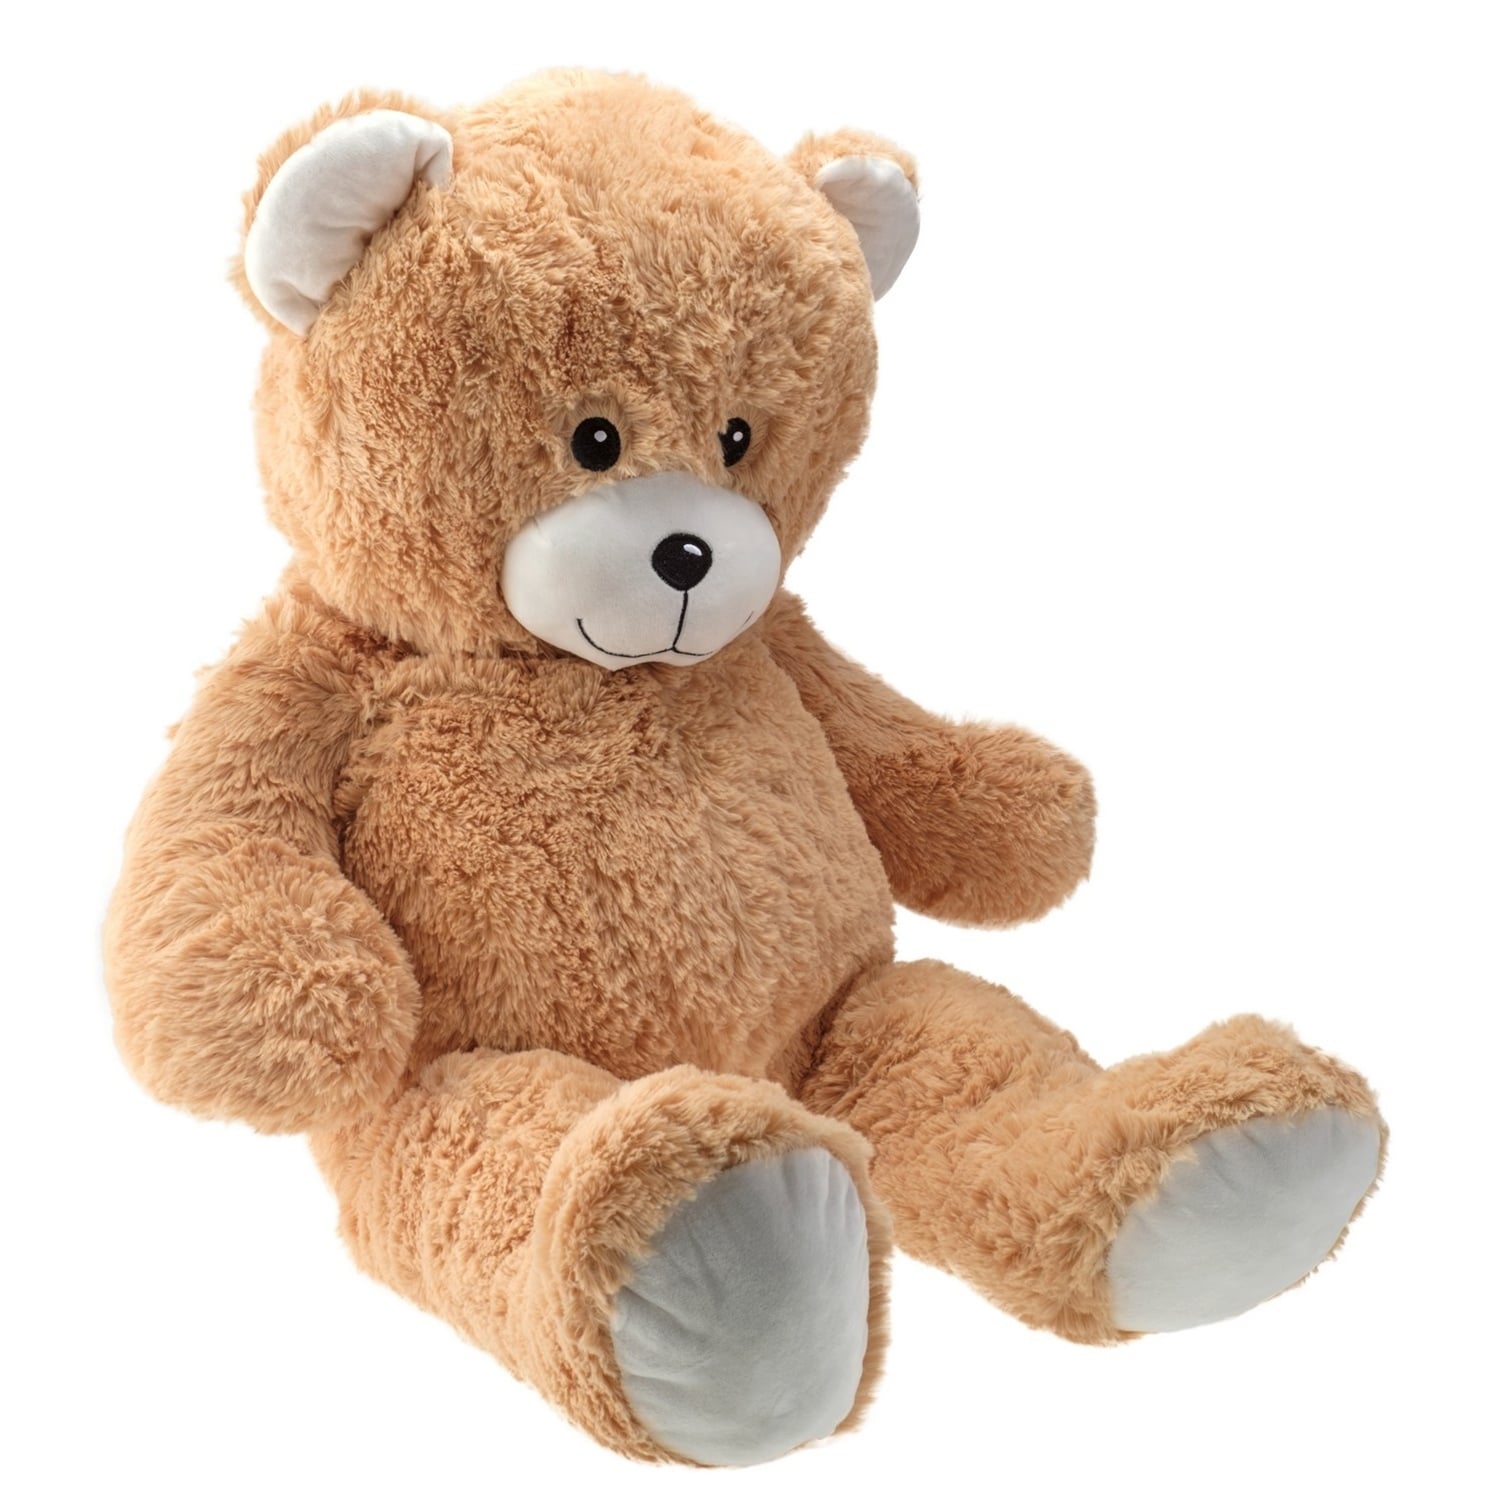 giant stuffed teddy bear